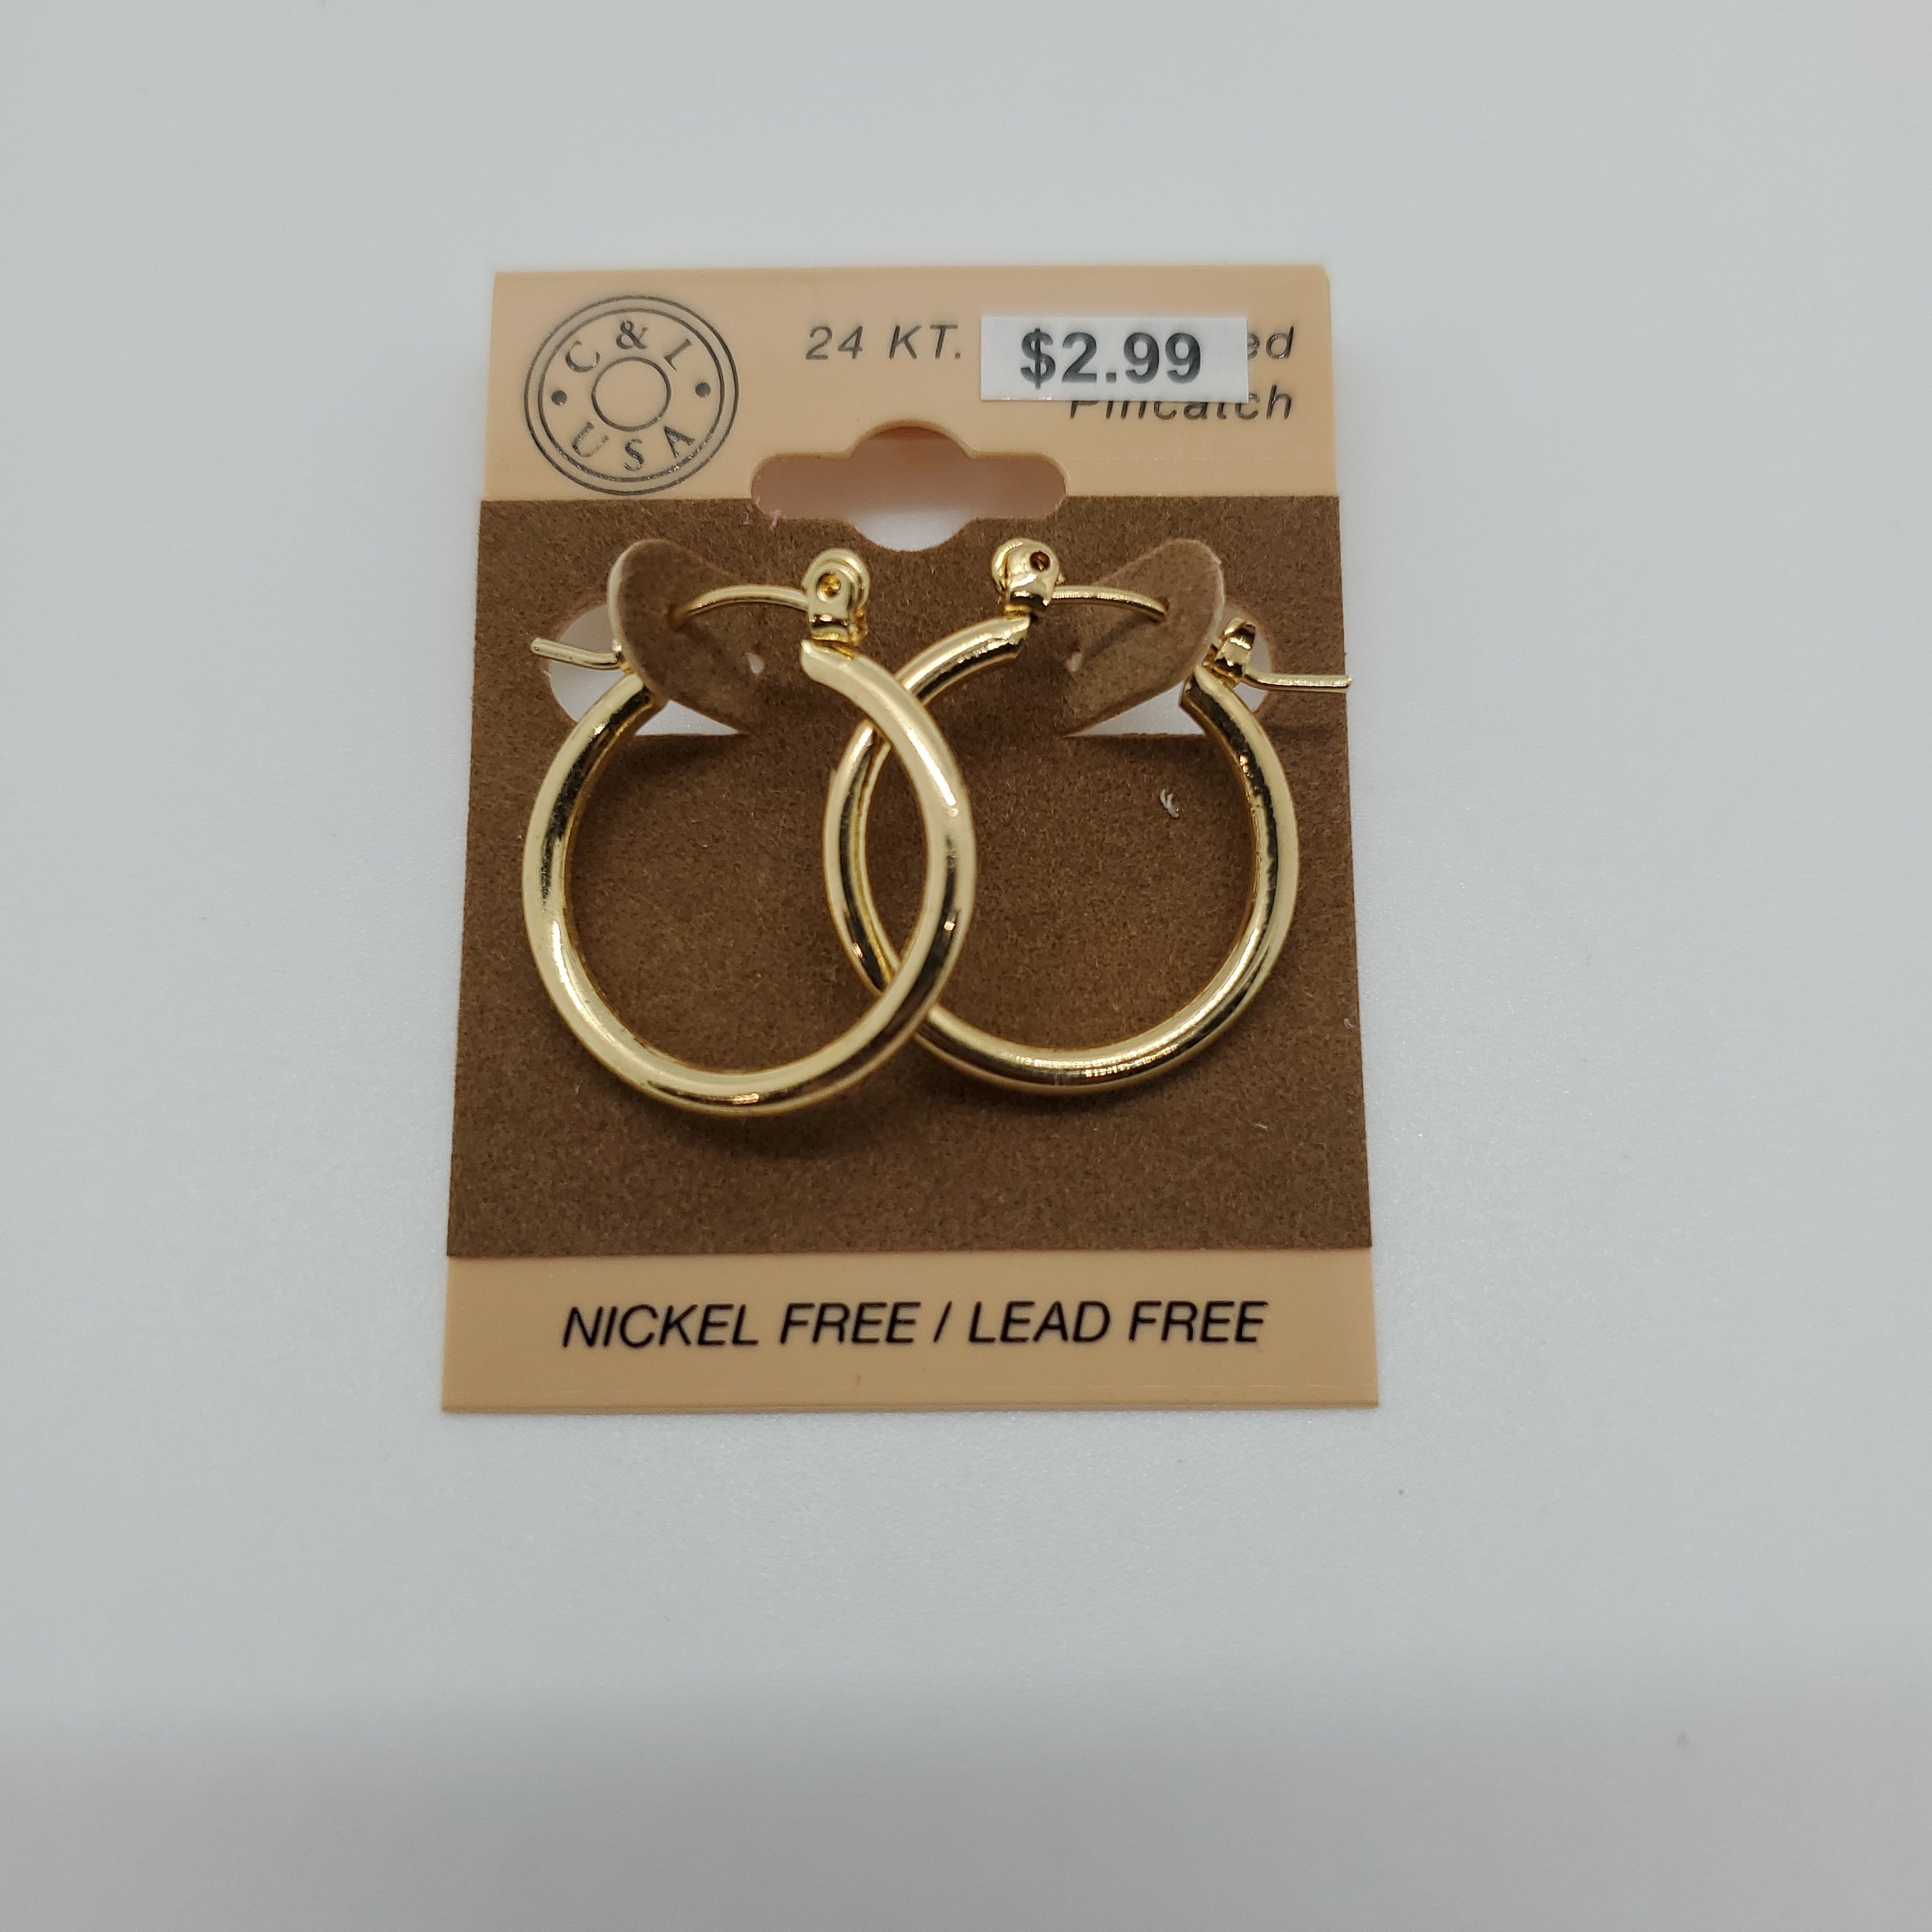 24KT Gold Plated Pincatch Hoop Earrings NPK104 - Beauty Bar & Supply